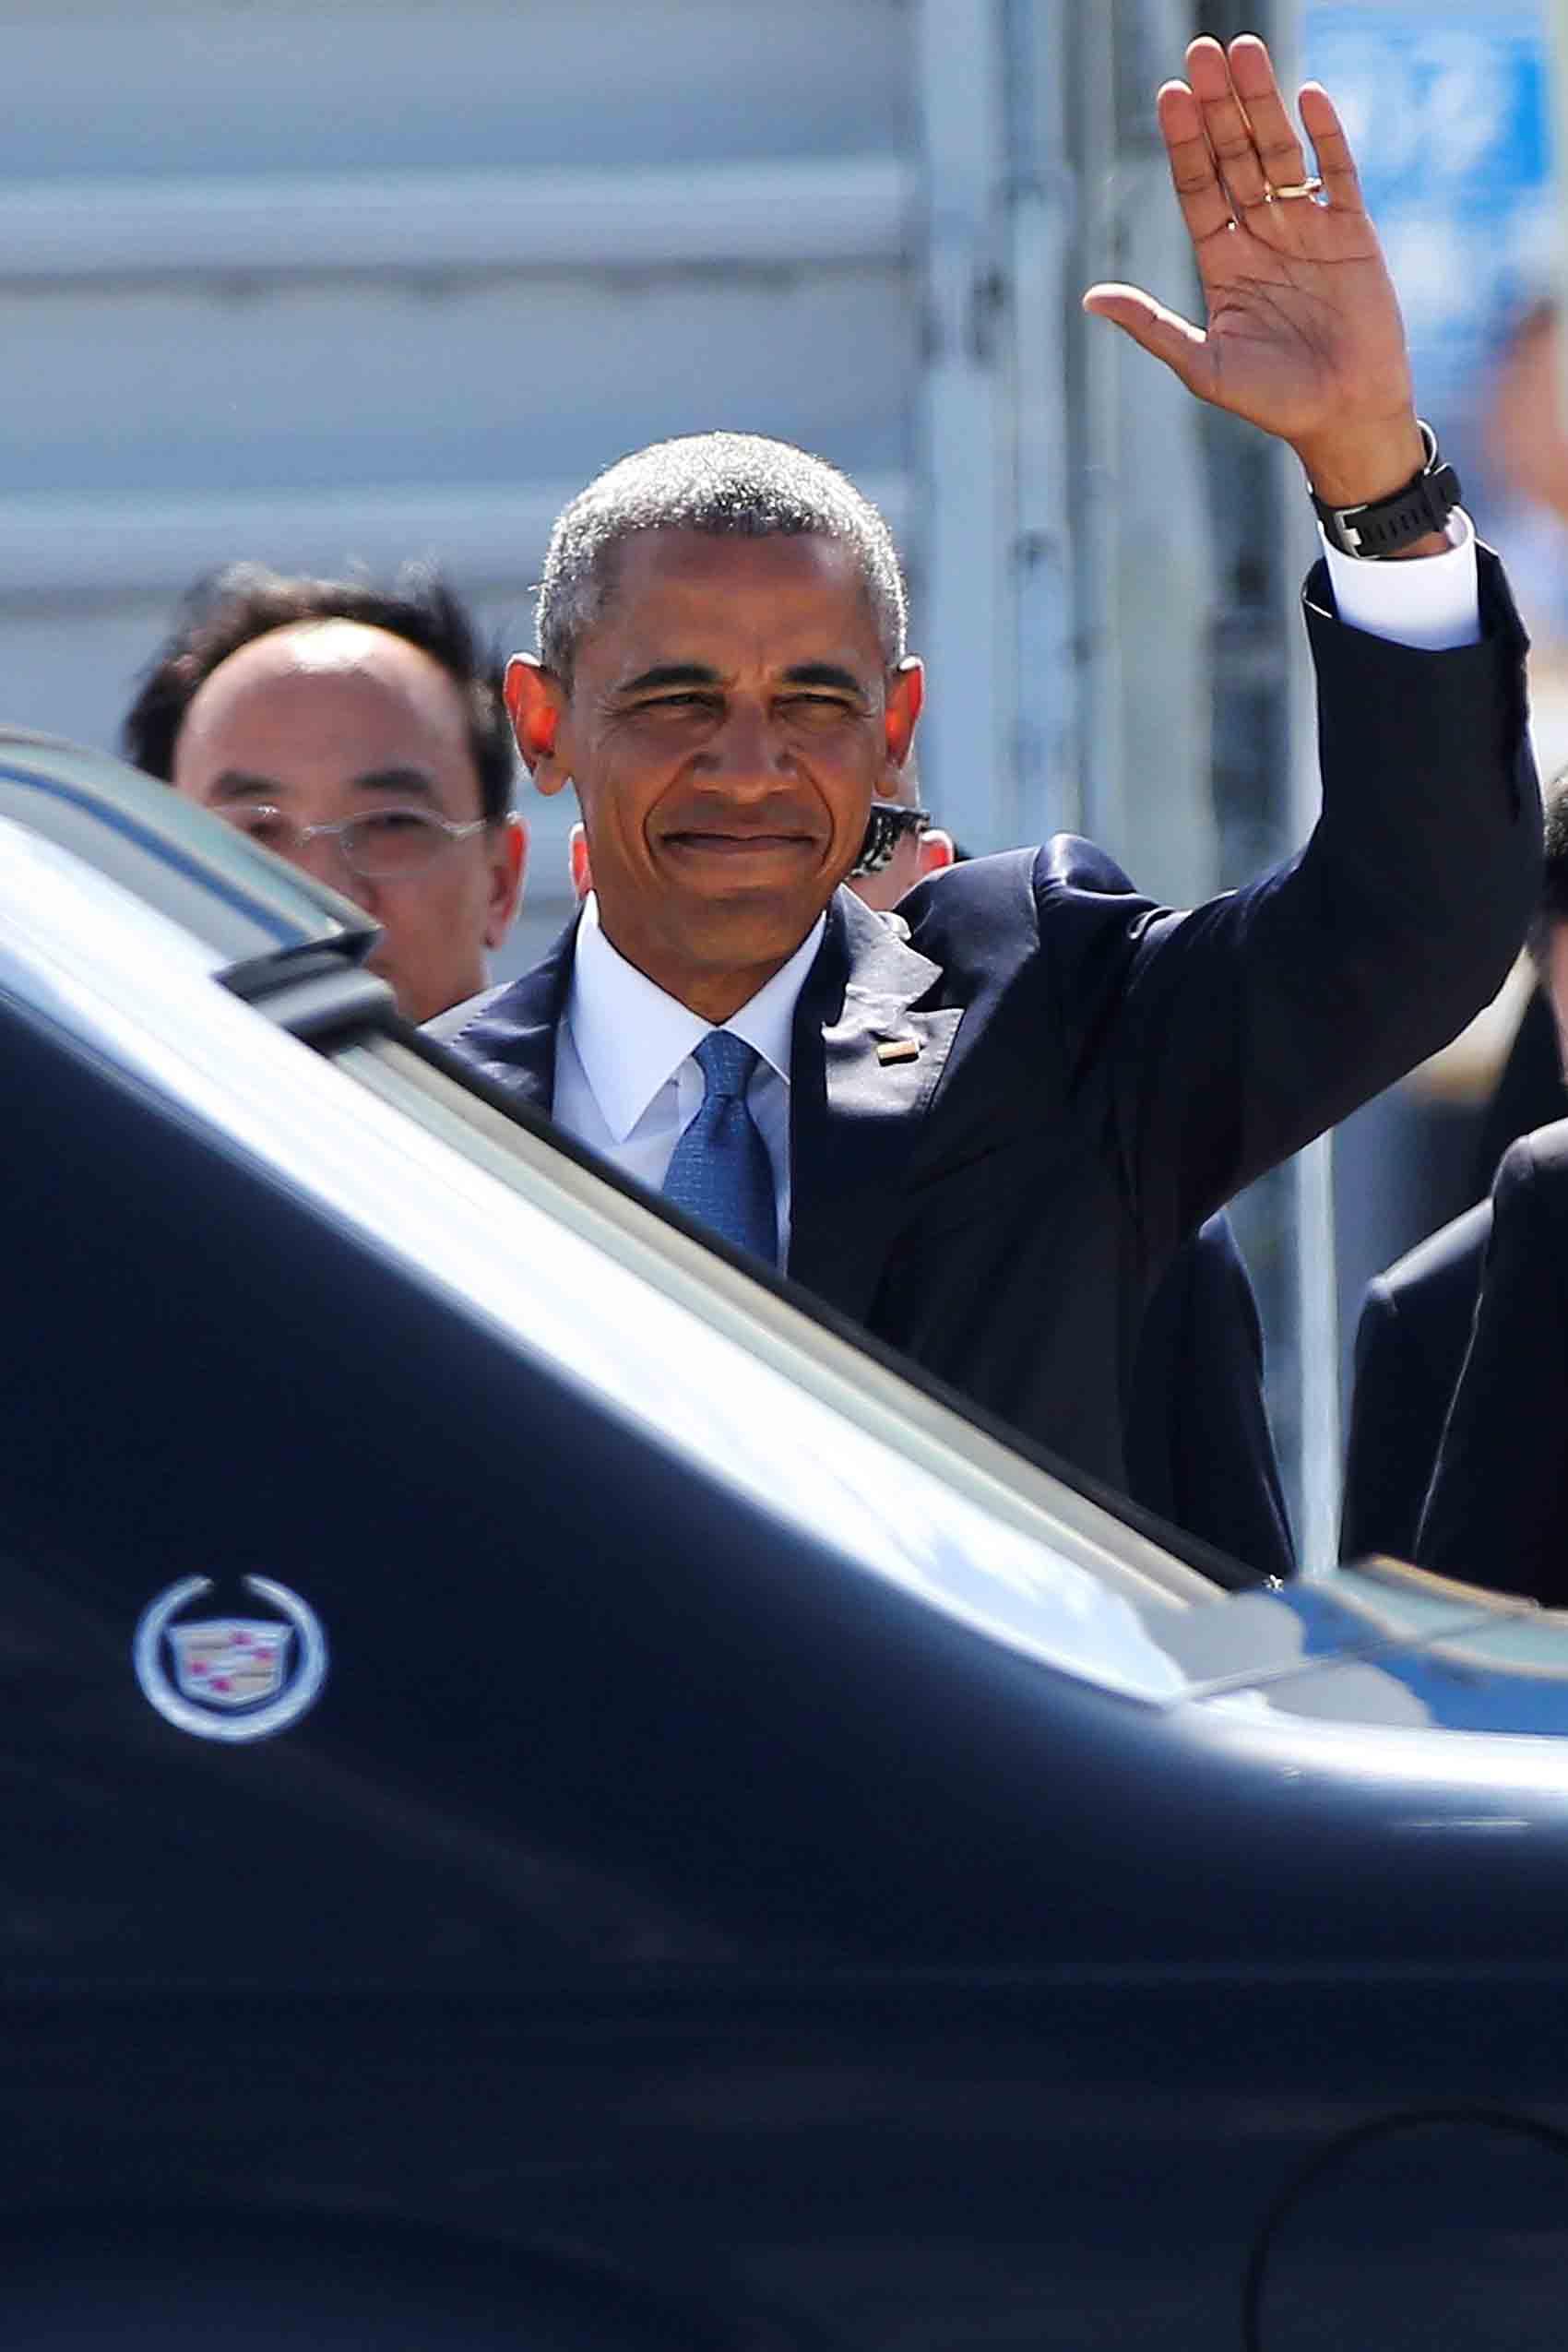 Obama anländer till Kina för G20-toppmötet.